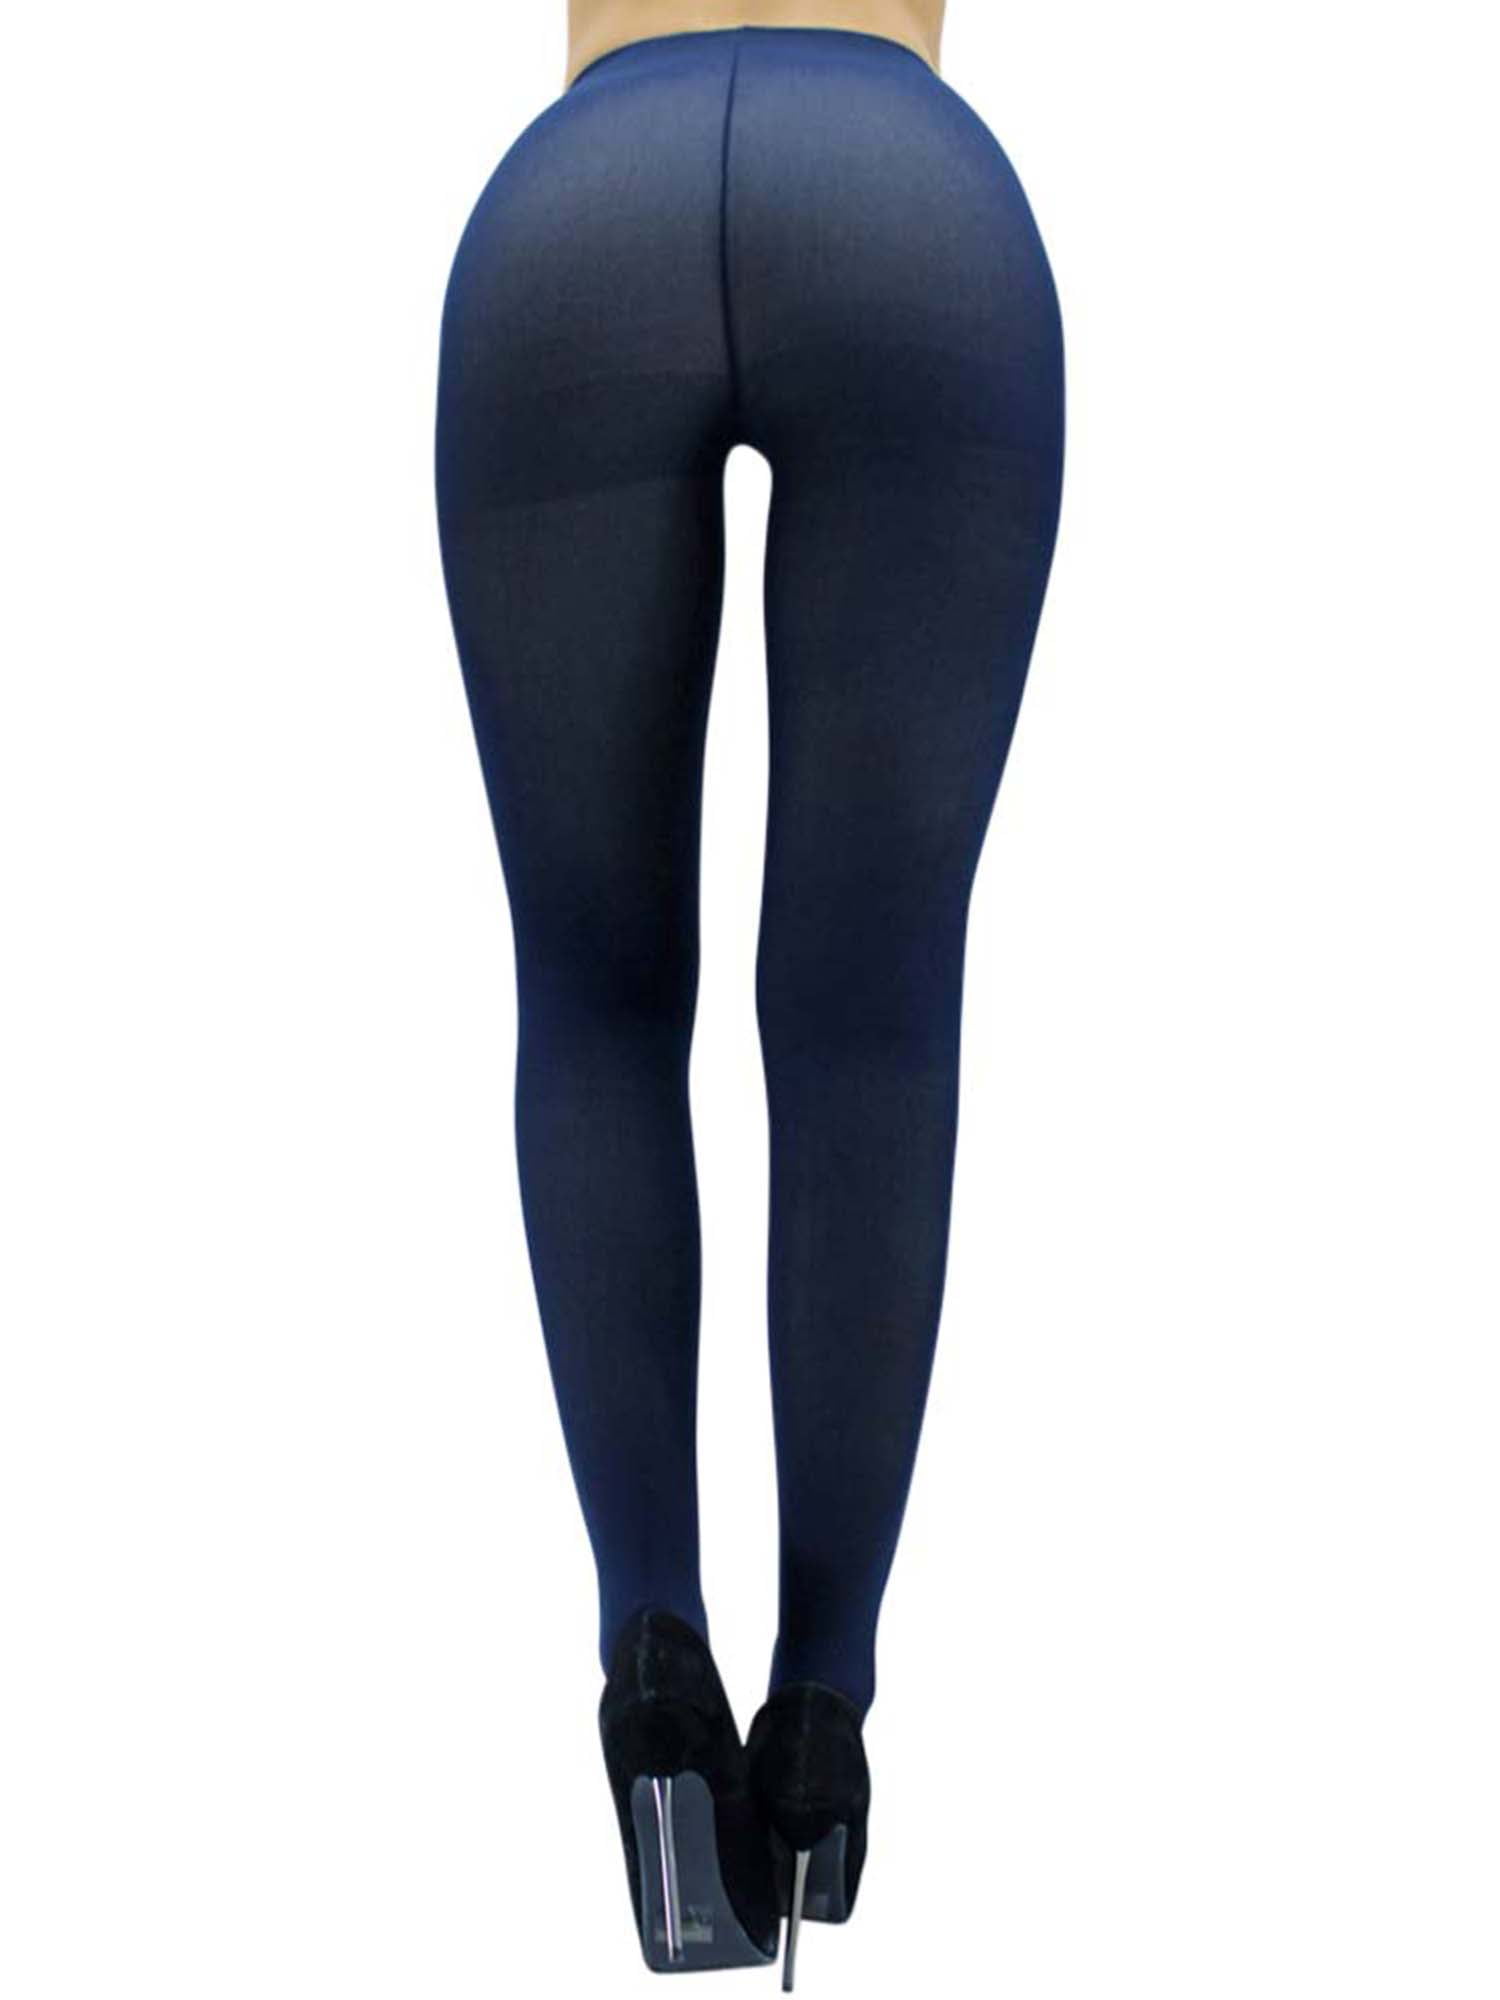 Blue navy tights leggings(see tru) 😲😍 : r/MenInLeggings